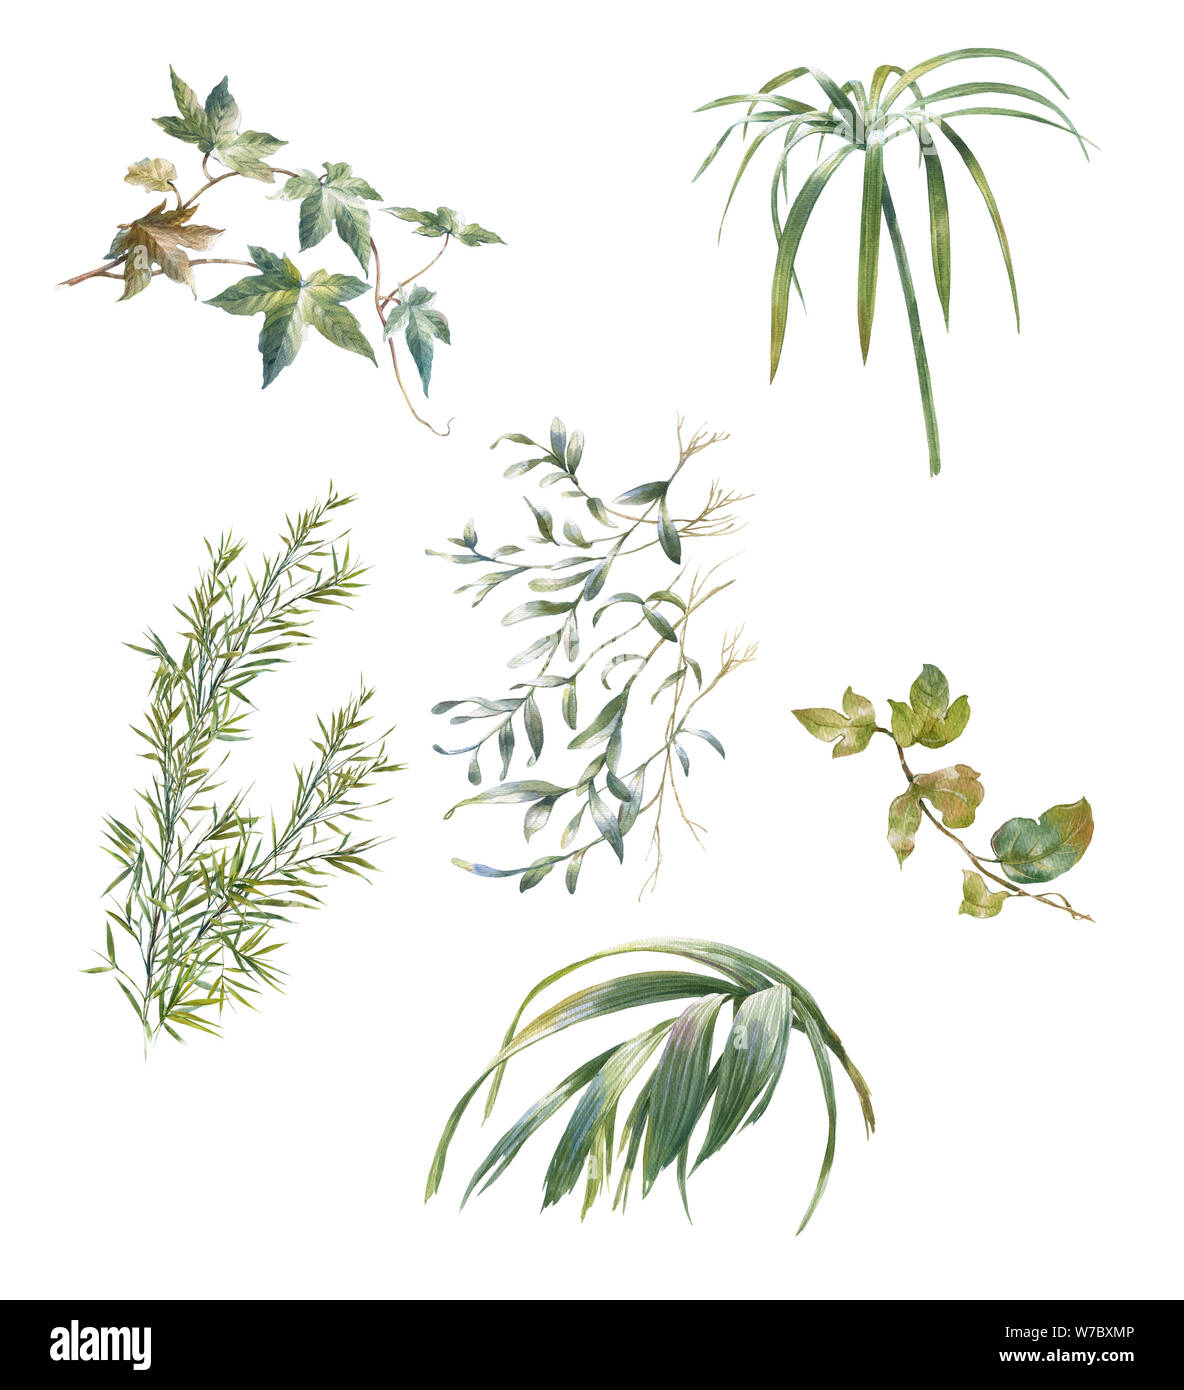 Acuarela de hojas ilustración sobre fondo blanco. Foto de stock